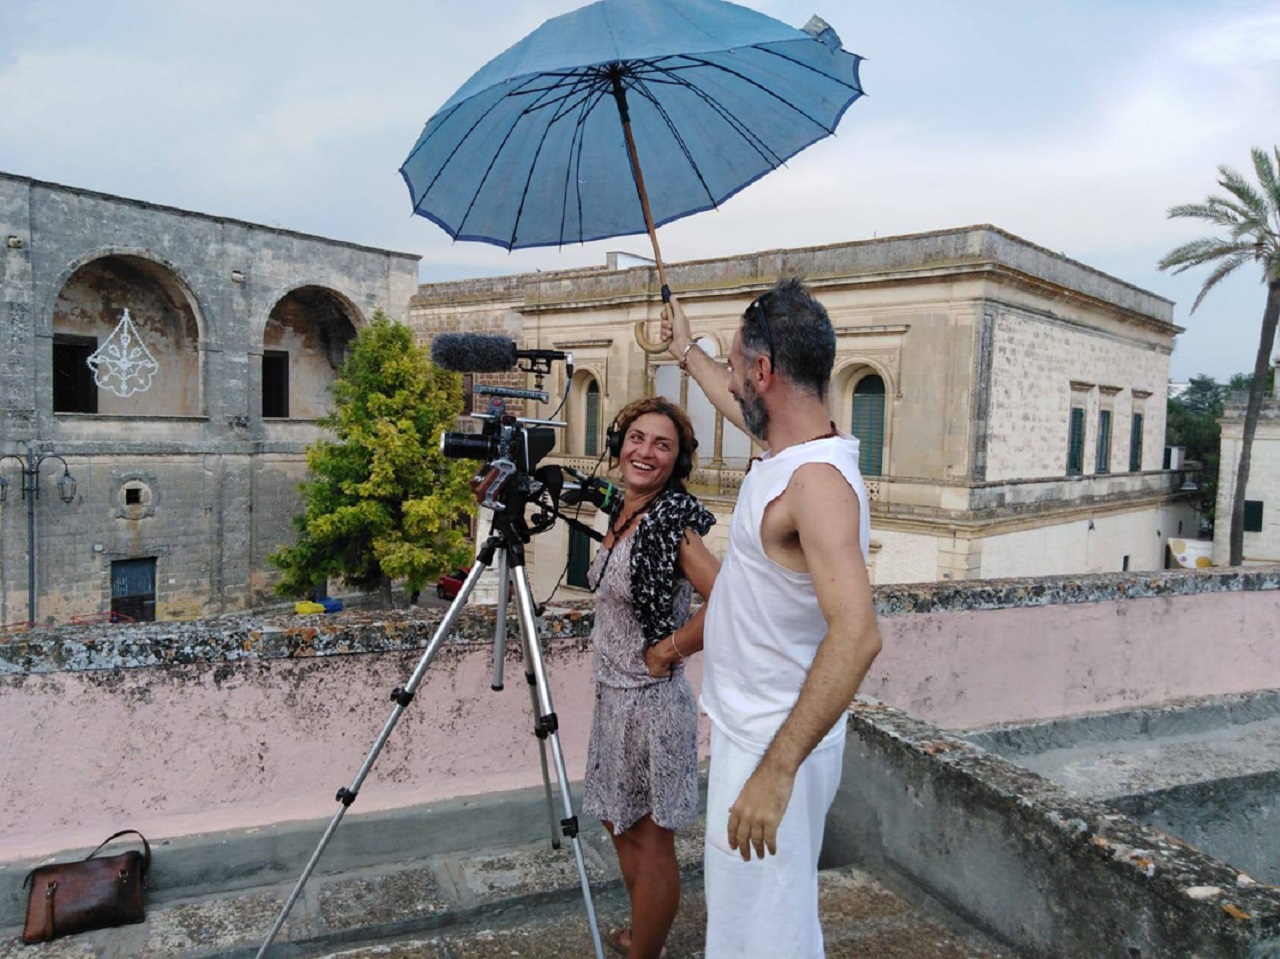 Alessandra Coppola bei Dreharbeiten für "Restanza" in Apulien, ein Mann hält ihr einen Regenschirm über die Kamera, beide lachen.